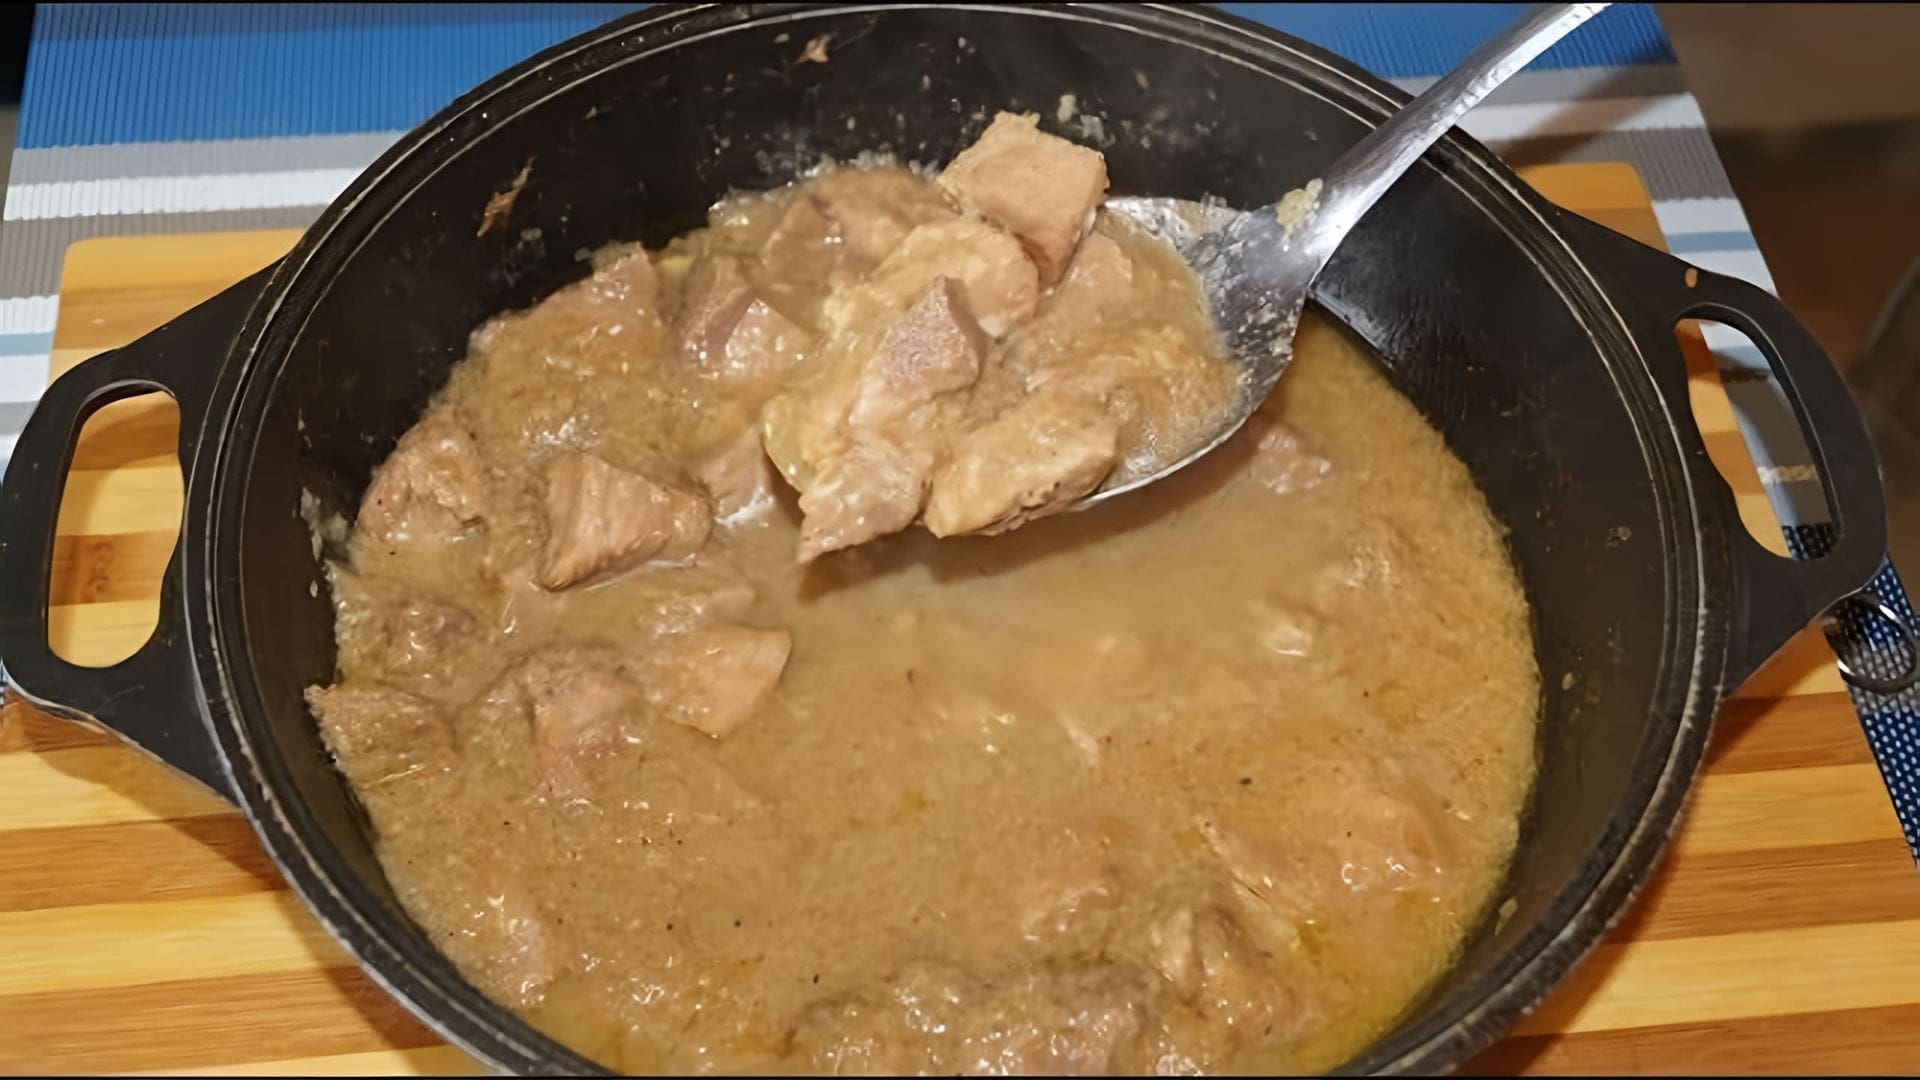 В этом видео демонстрируется рецепт приготовления обалденной луковой подливы с мясом